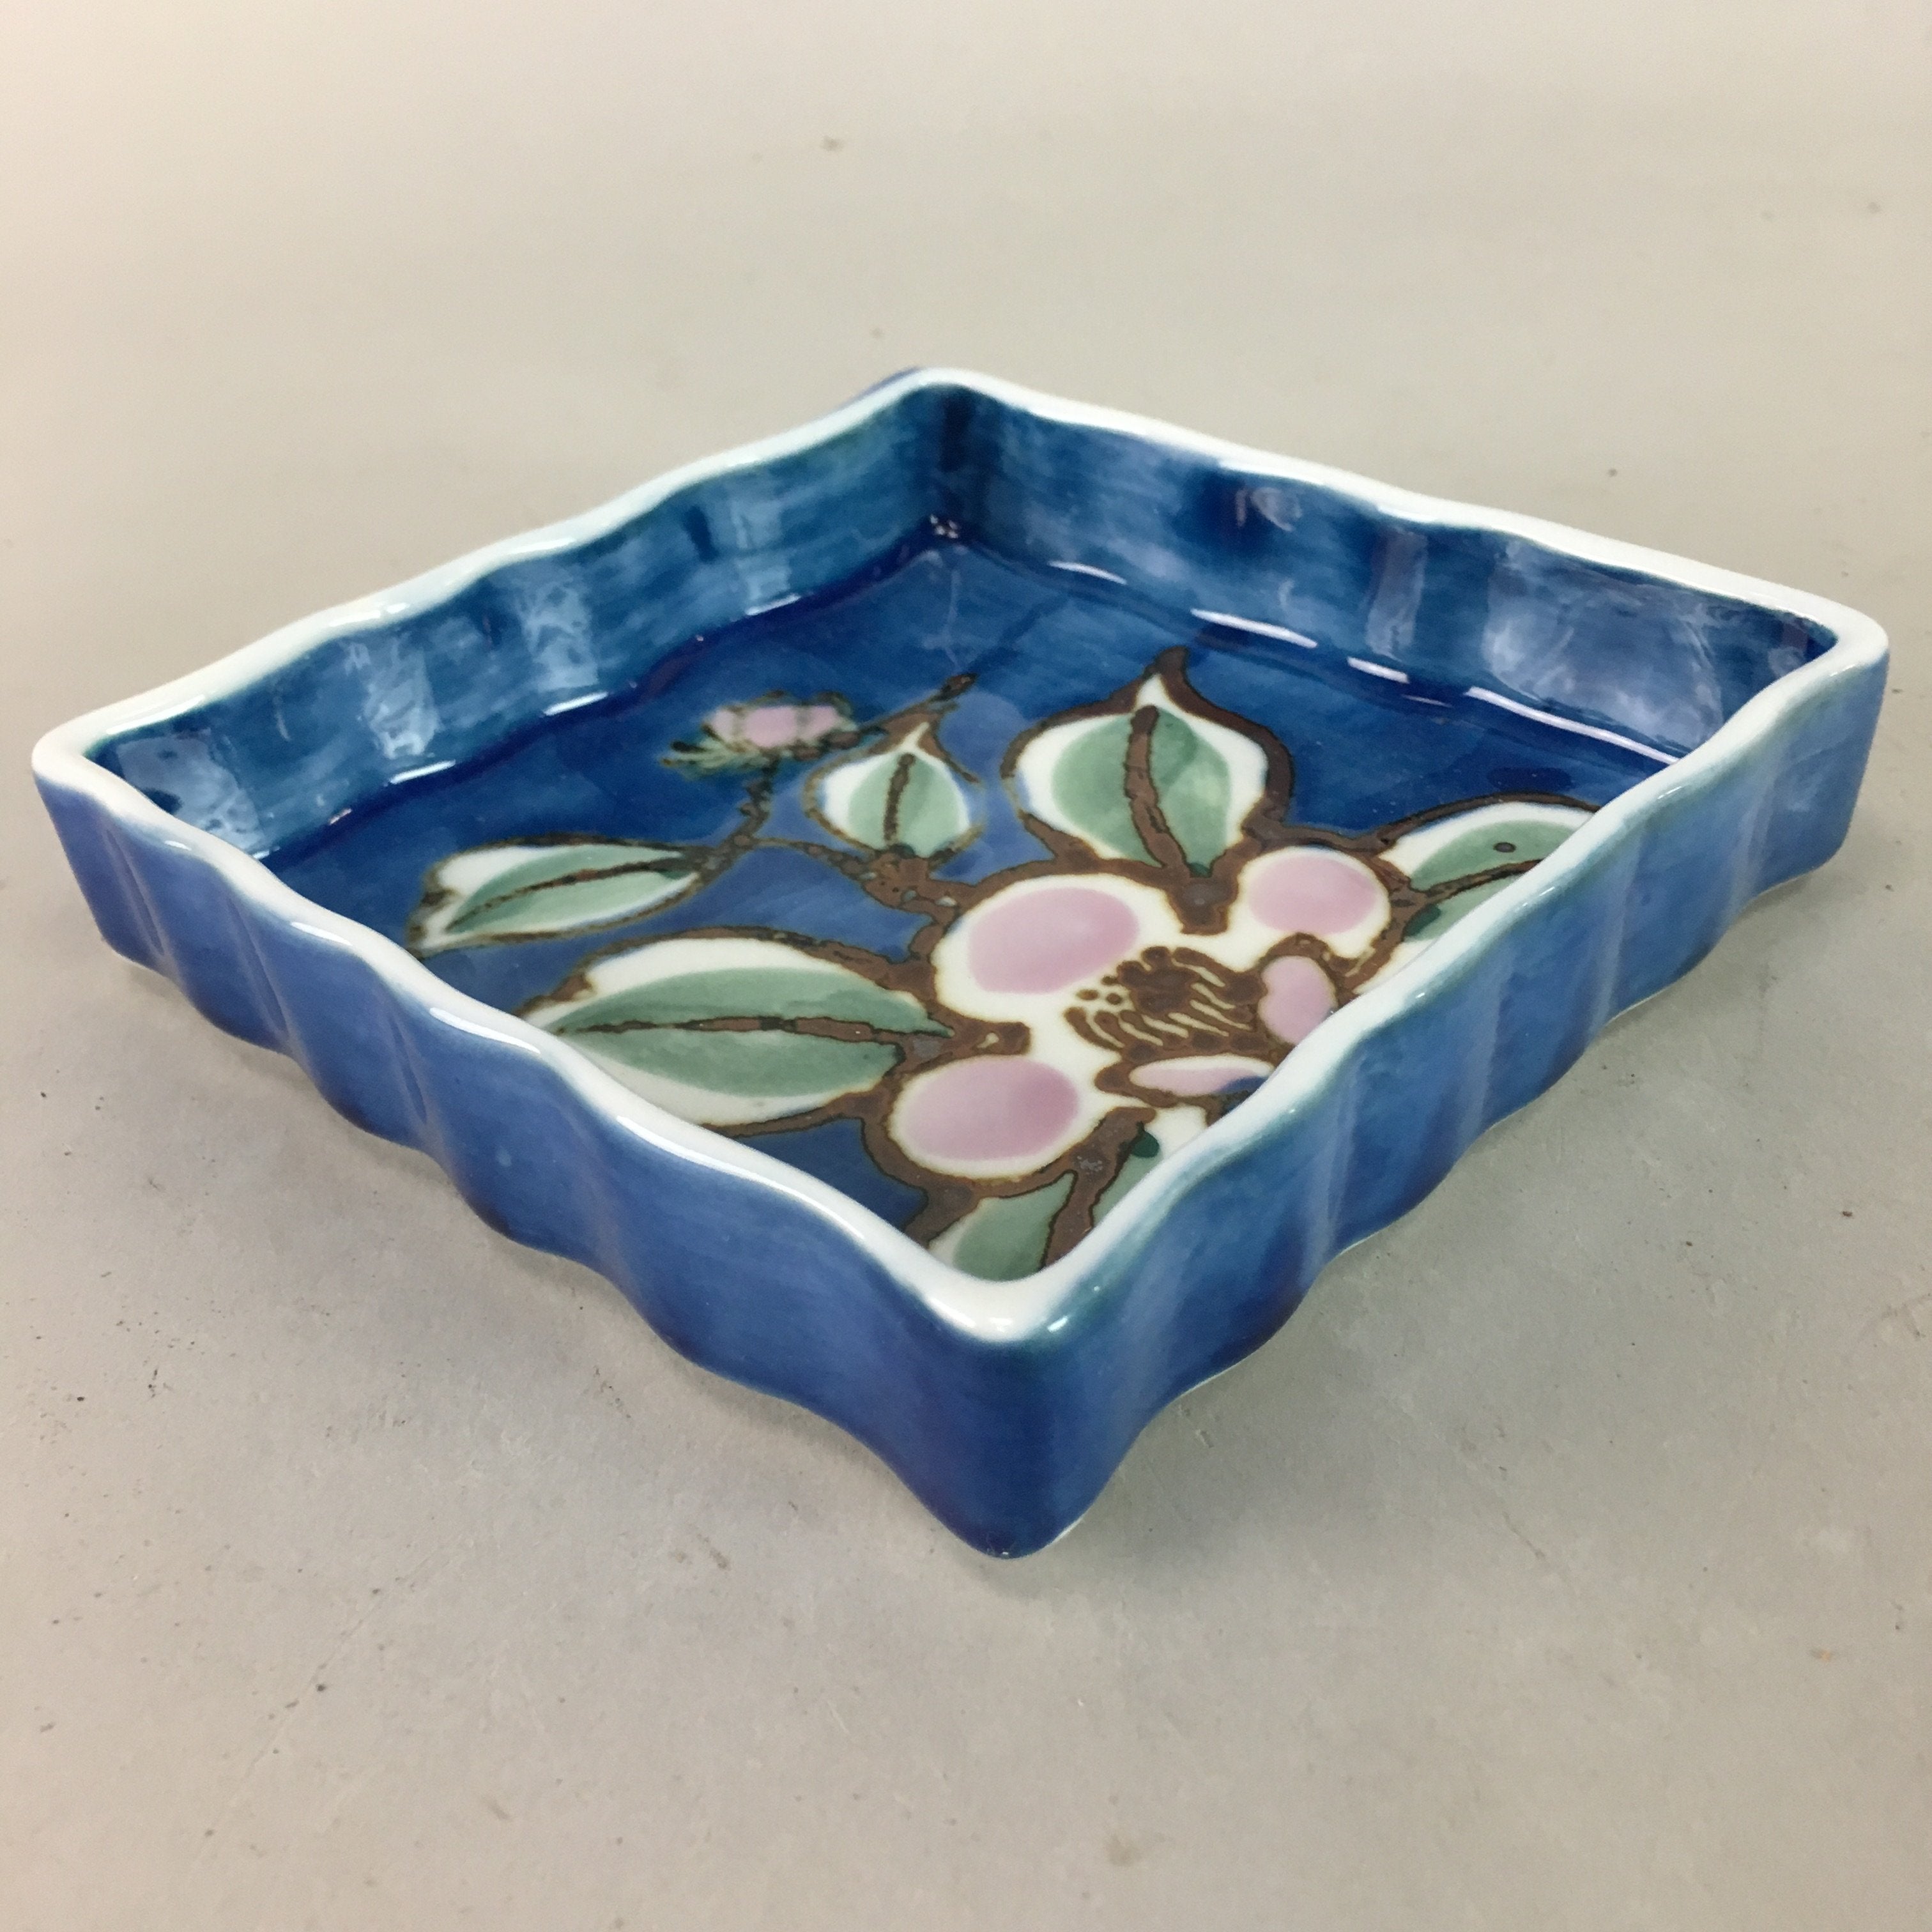 Japanese Porcelain Square Plate Vtg Kozara Blue Green Pink Floral Design QT46